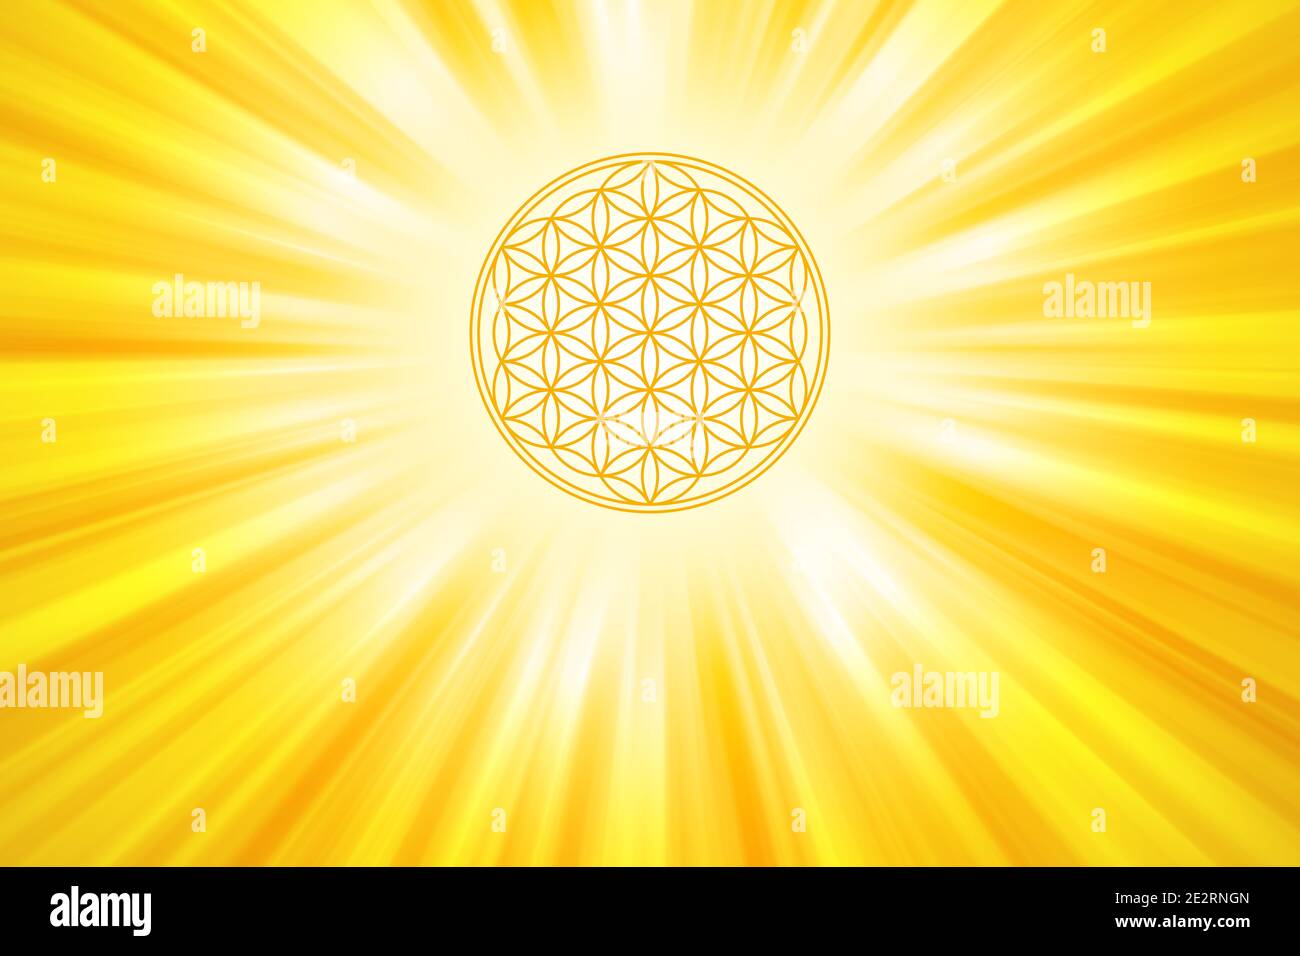 Fiore d'oro della vita con i raggi di sole sfondo. Figura geometrica composta da più cerchi sovrapposti che formano un motivo floreale. Un simbolo forte. Foto Stock